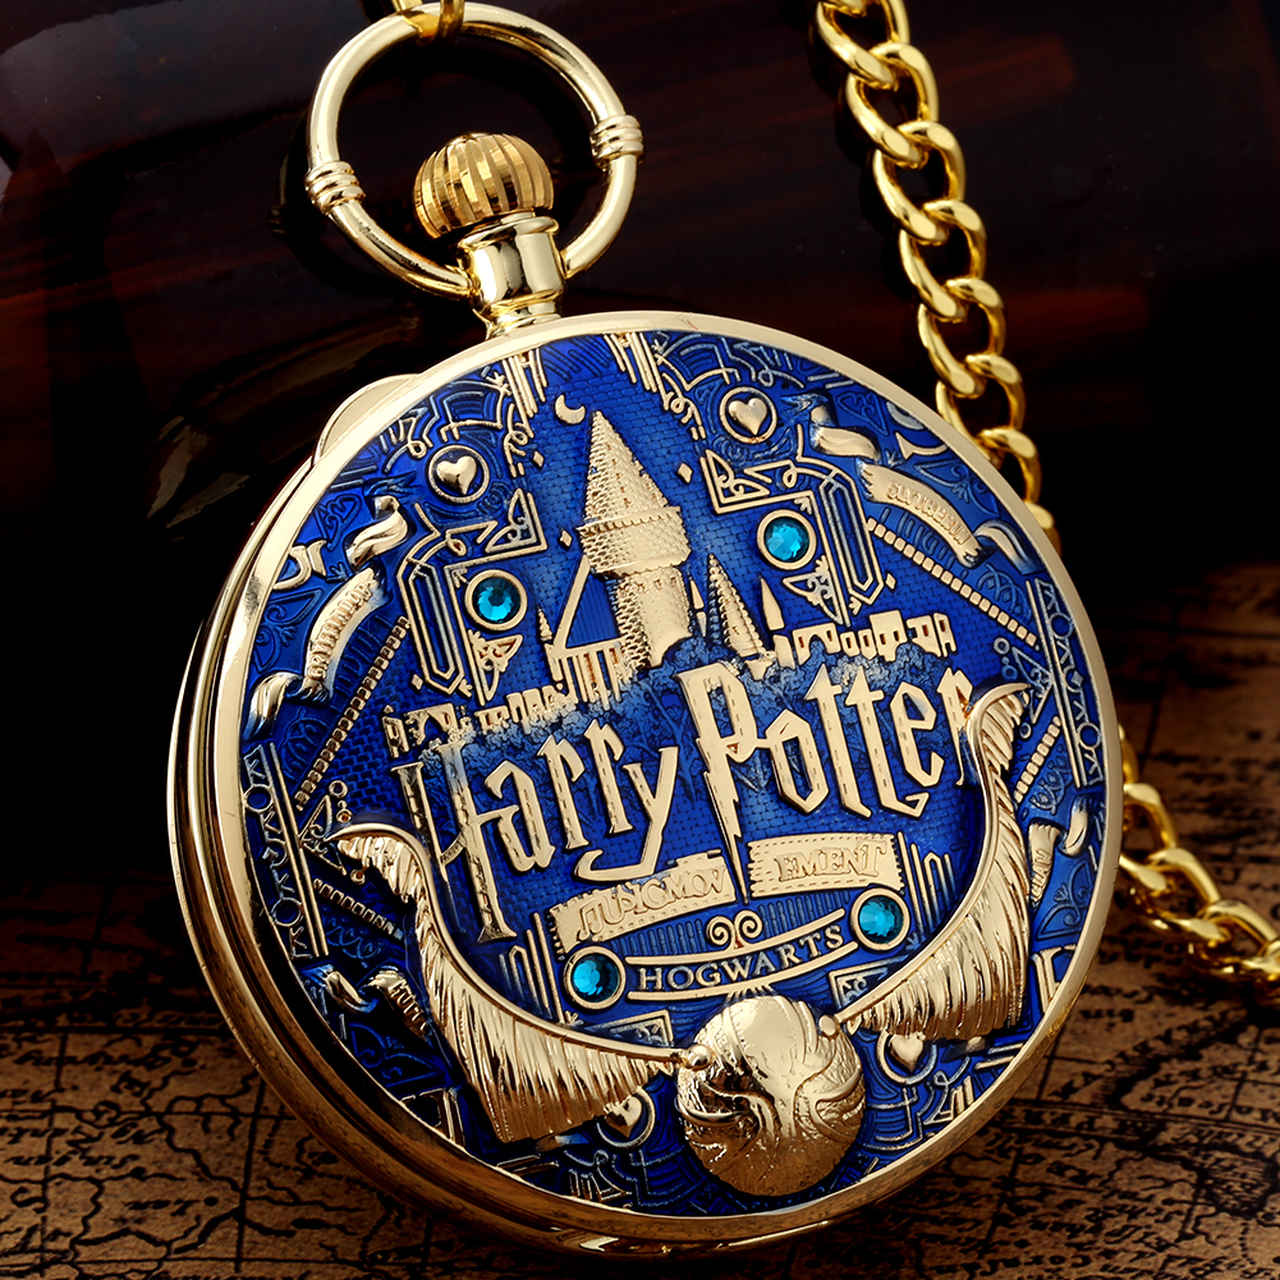 Relógio de Bolso e Caixinha de Musica Brasão Hogwarts: Corvinal Ravenclaw Pomo de Ouro Harry Potter Dourado e Azul - MKP